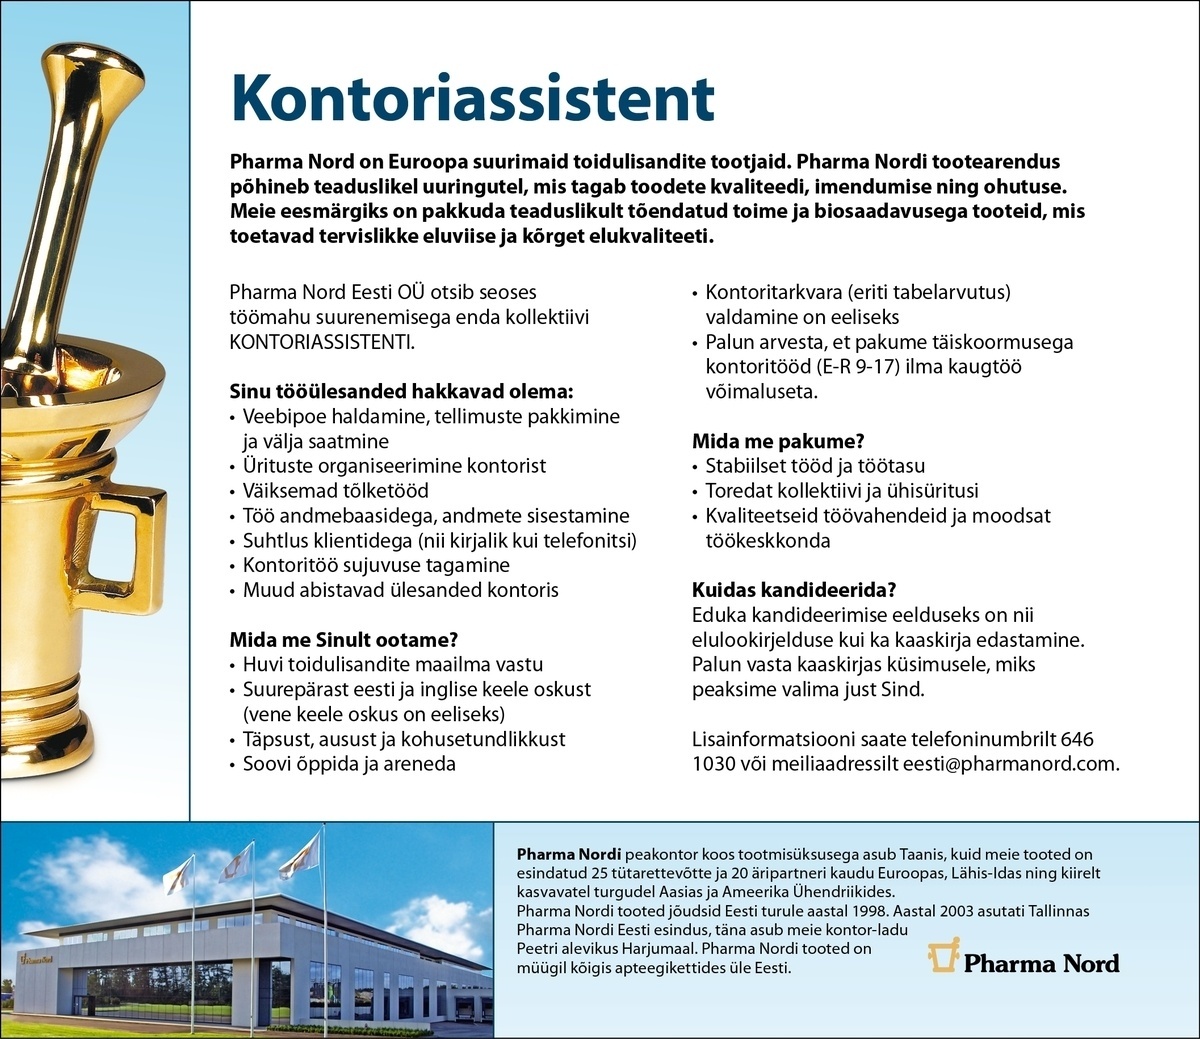 Pharma Nord Eesti OÜ Kontoriassistent